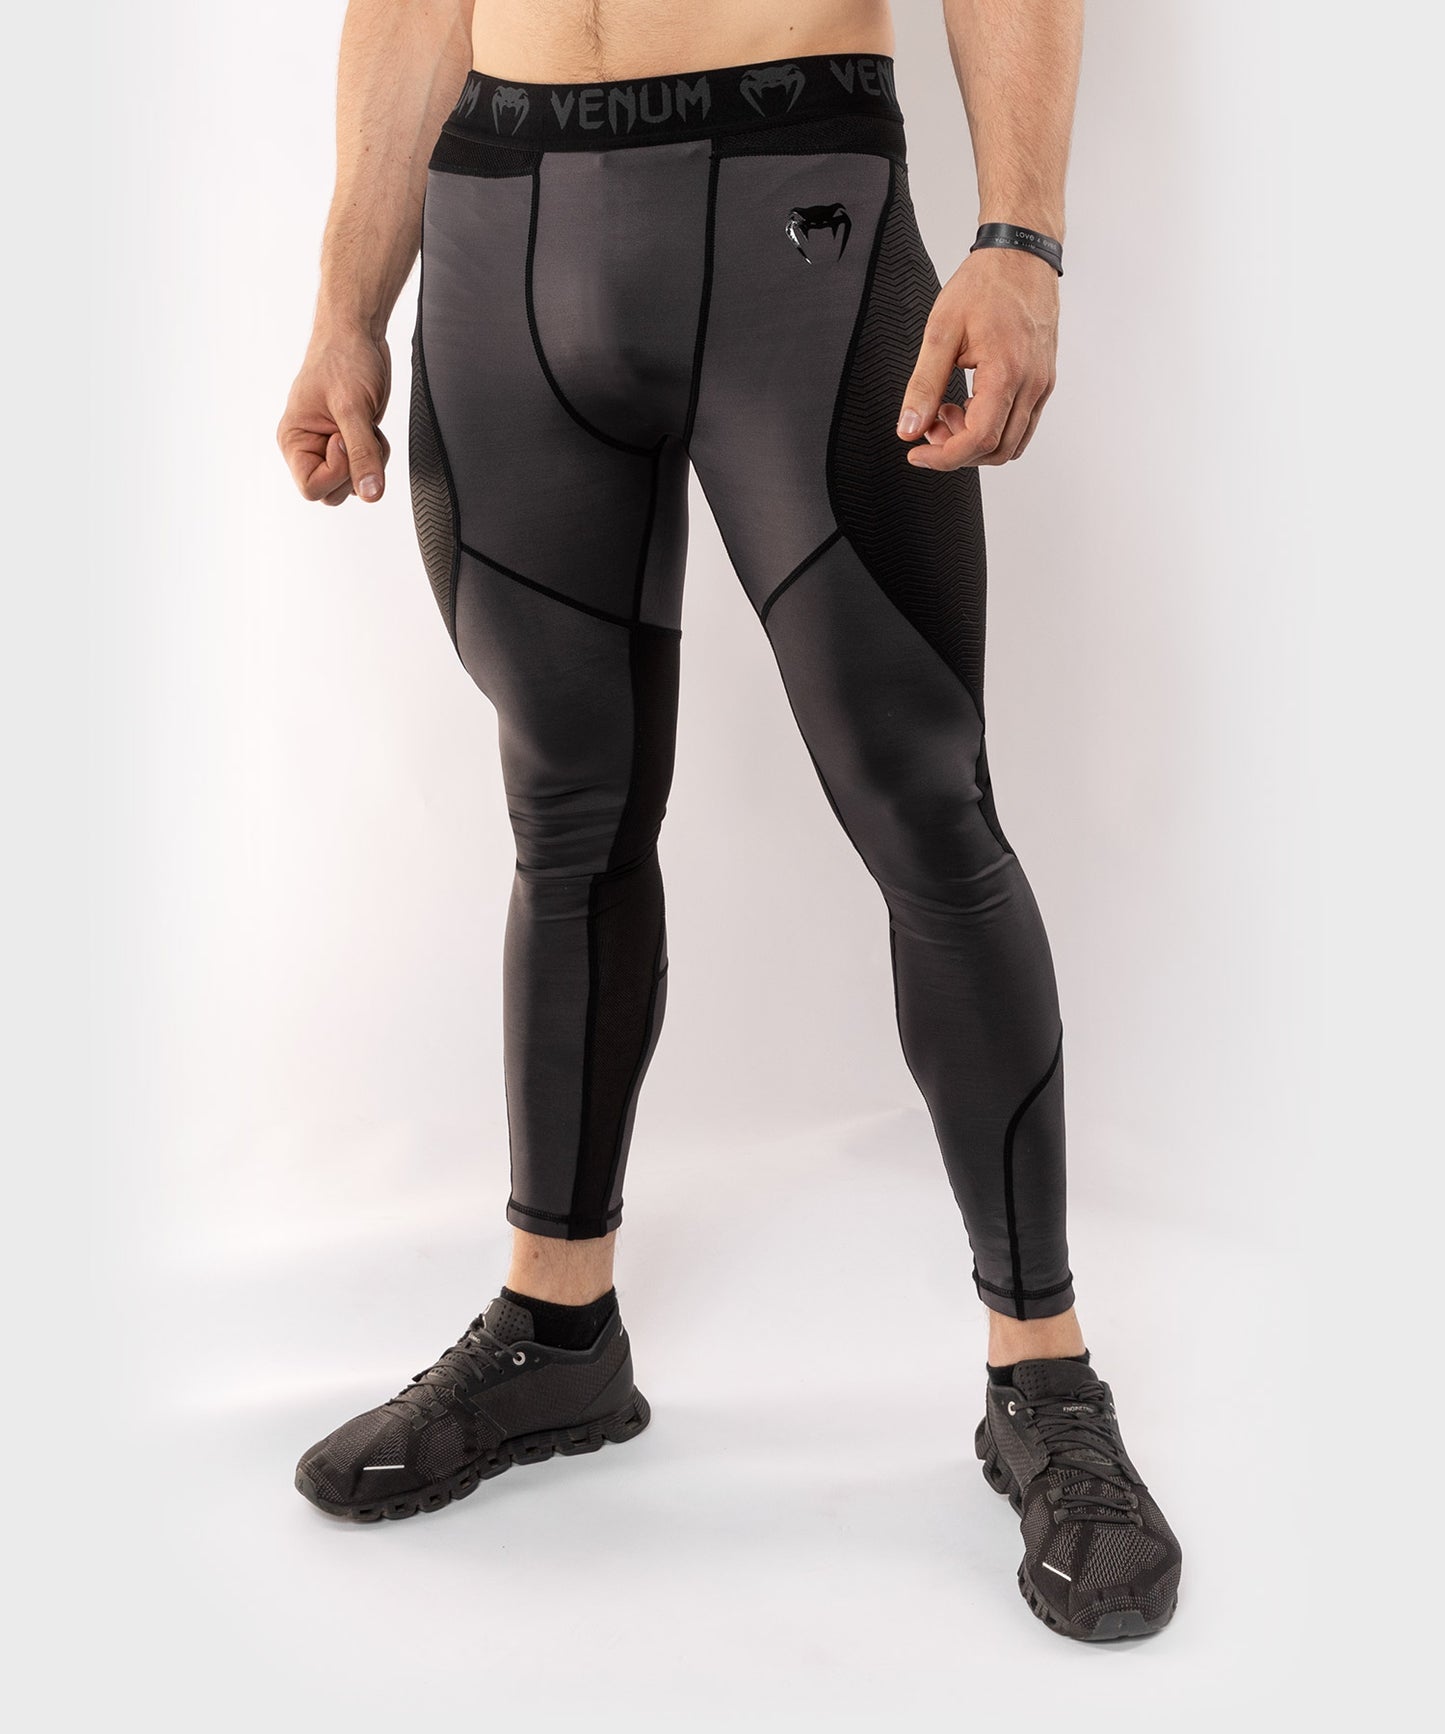 Pantalon de Compression Venum G-Fit - Gris/Noir